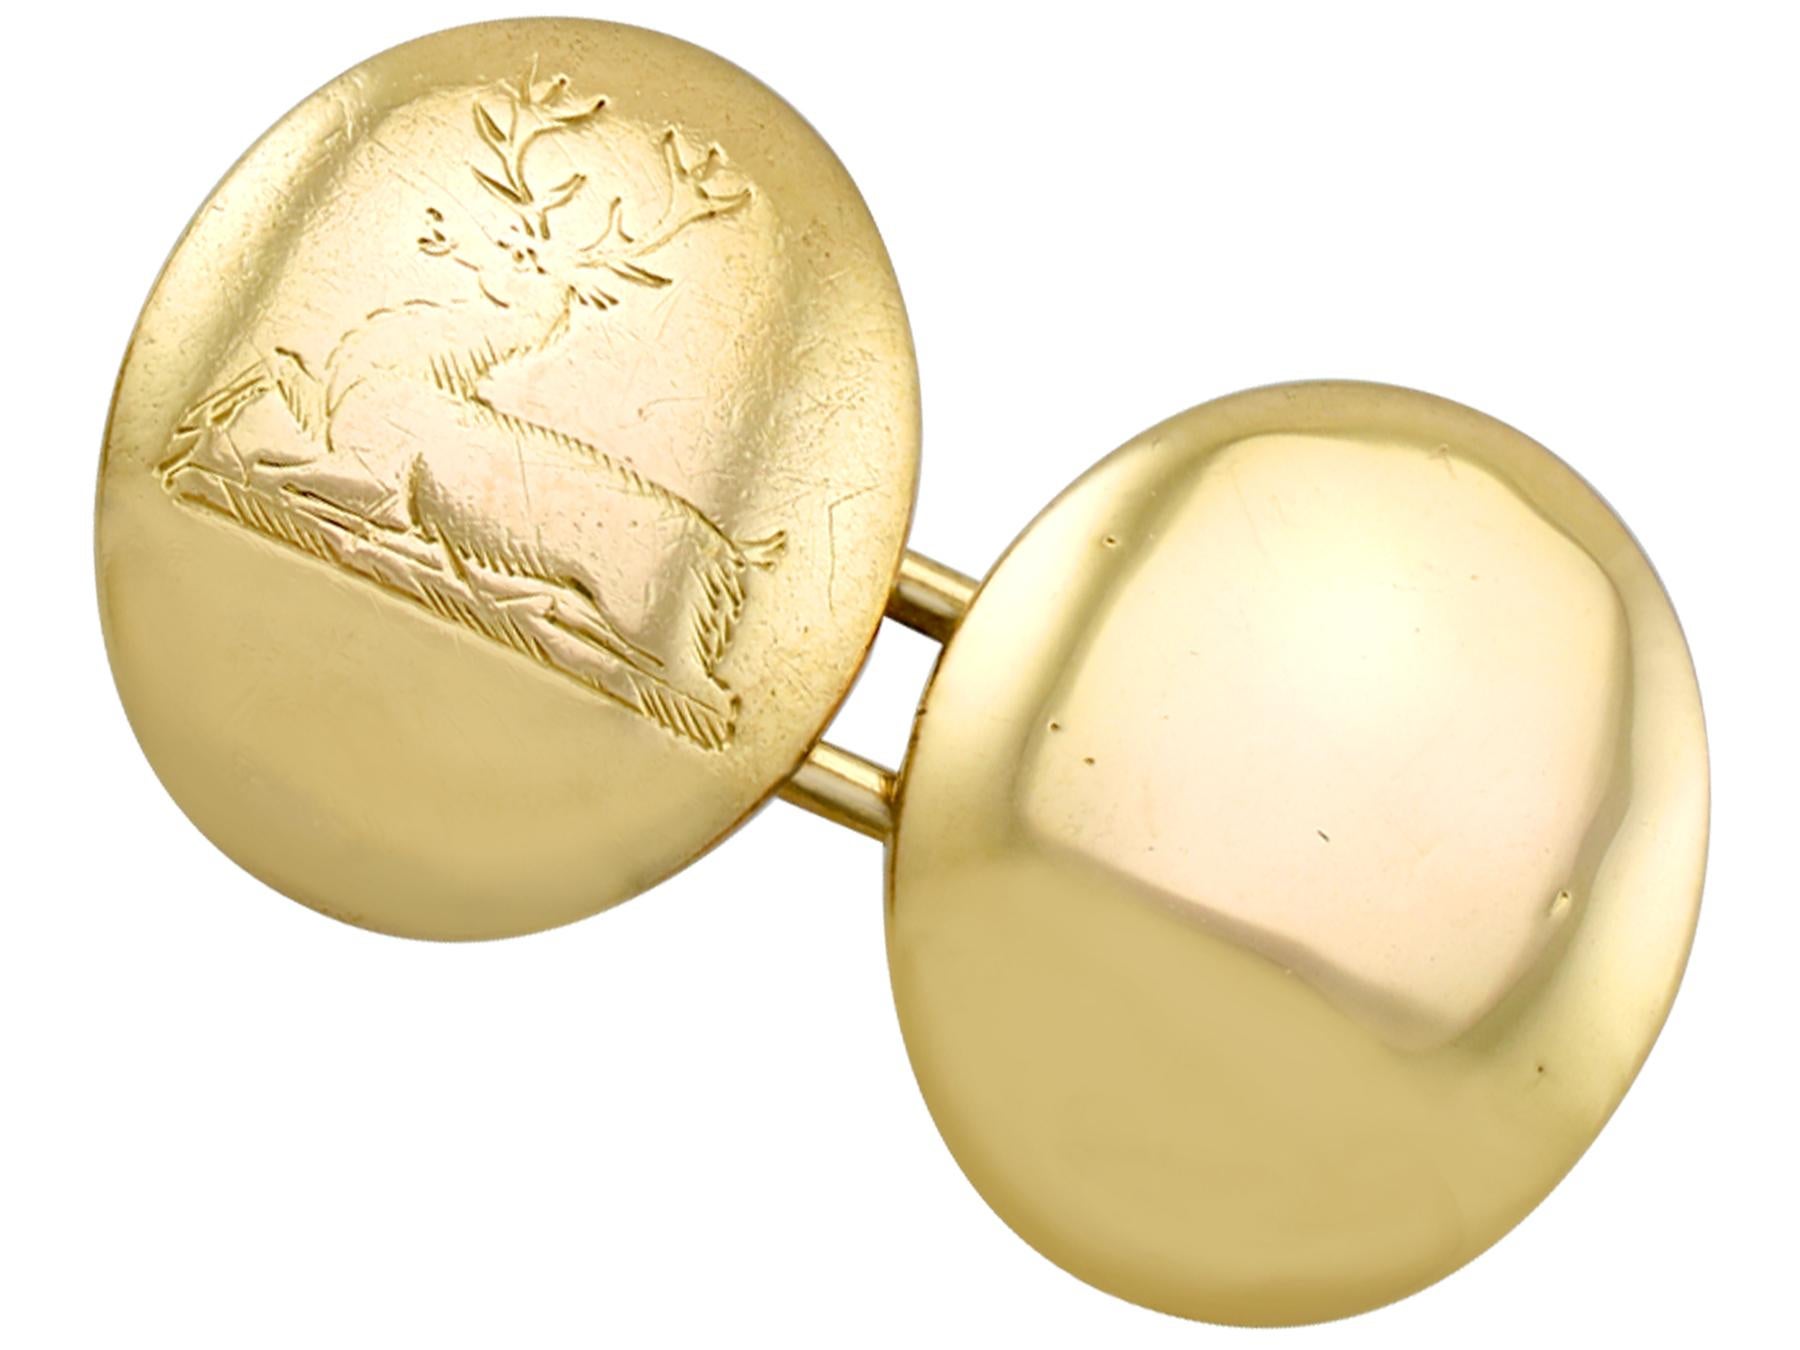 Une impressionnante paire de boutons de manchette victoriens anciens en or jaune 15 carats avec des écussons gravés ; faisant partie de nos diverses collections de bijoux anciens et de bijoux de succession.

Ces boutons de manchette en or antique,